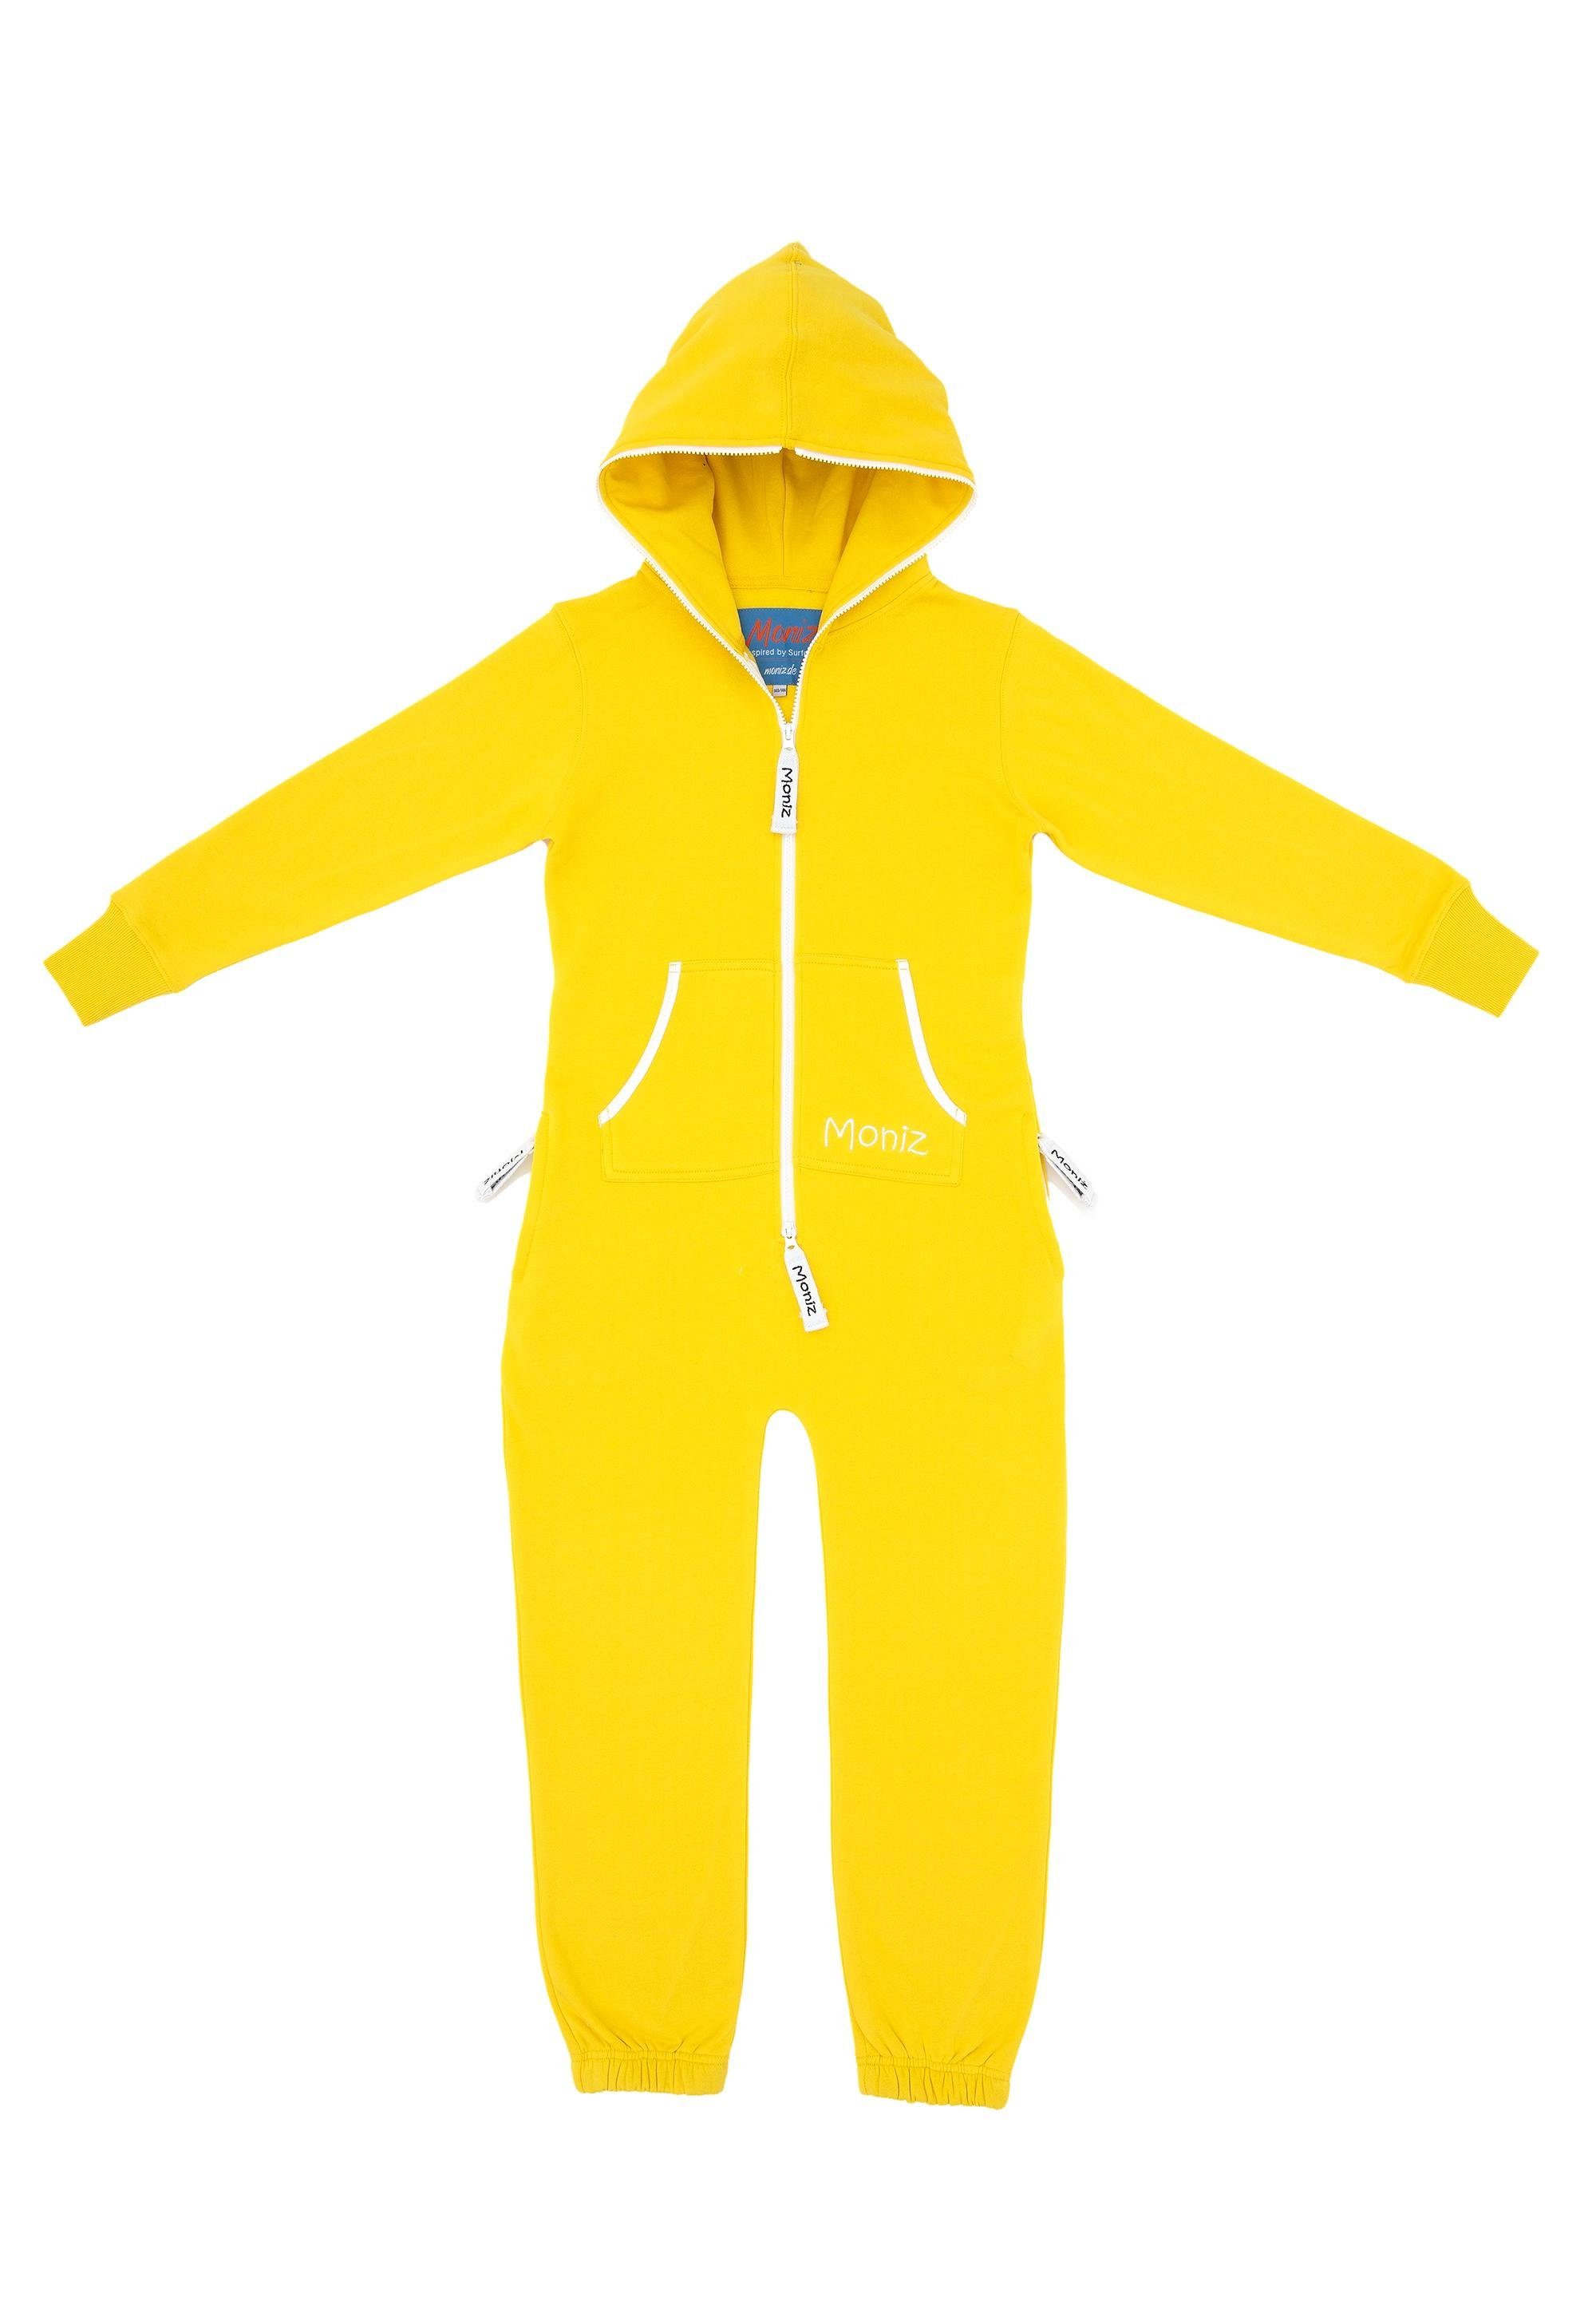 Moniz Jumpsuit mit kuscheligem Komfort gelb-weiß